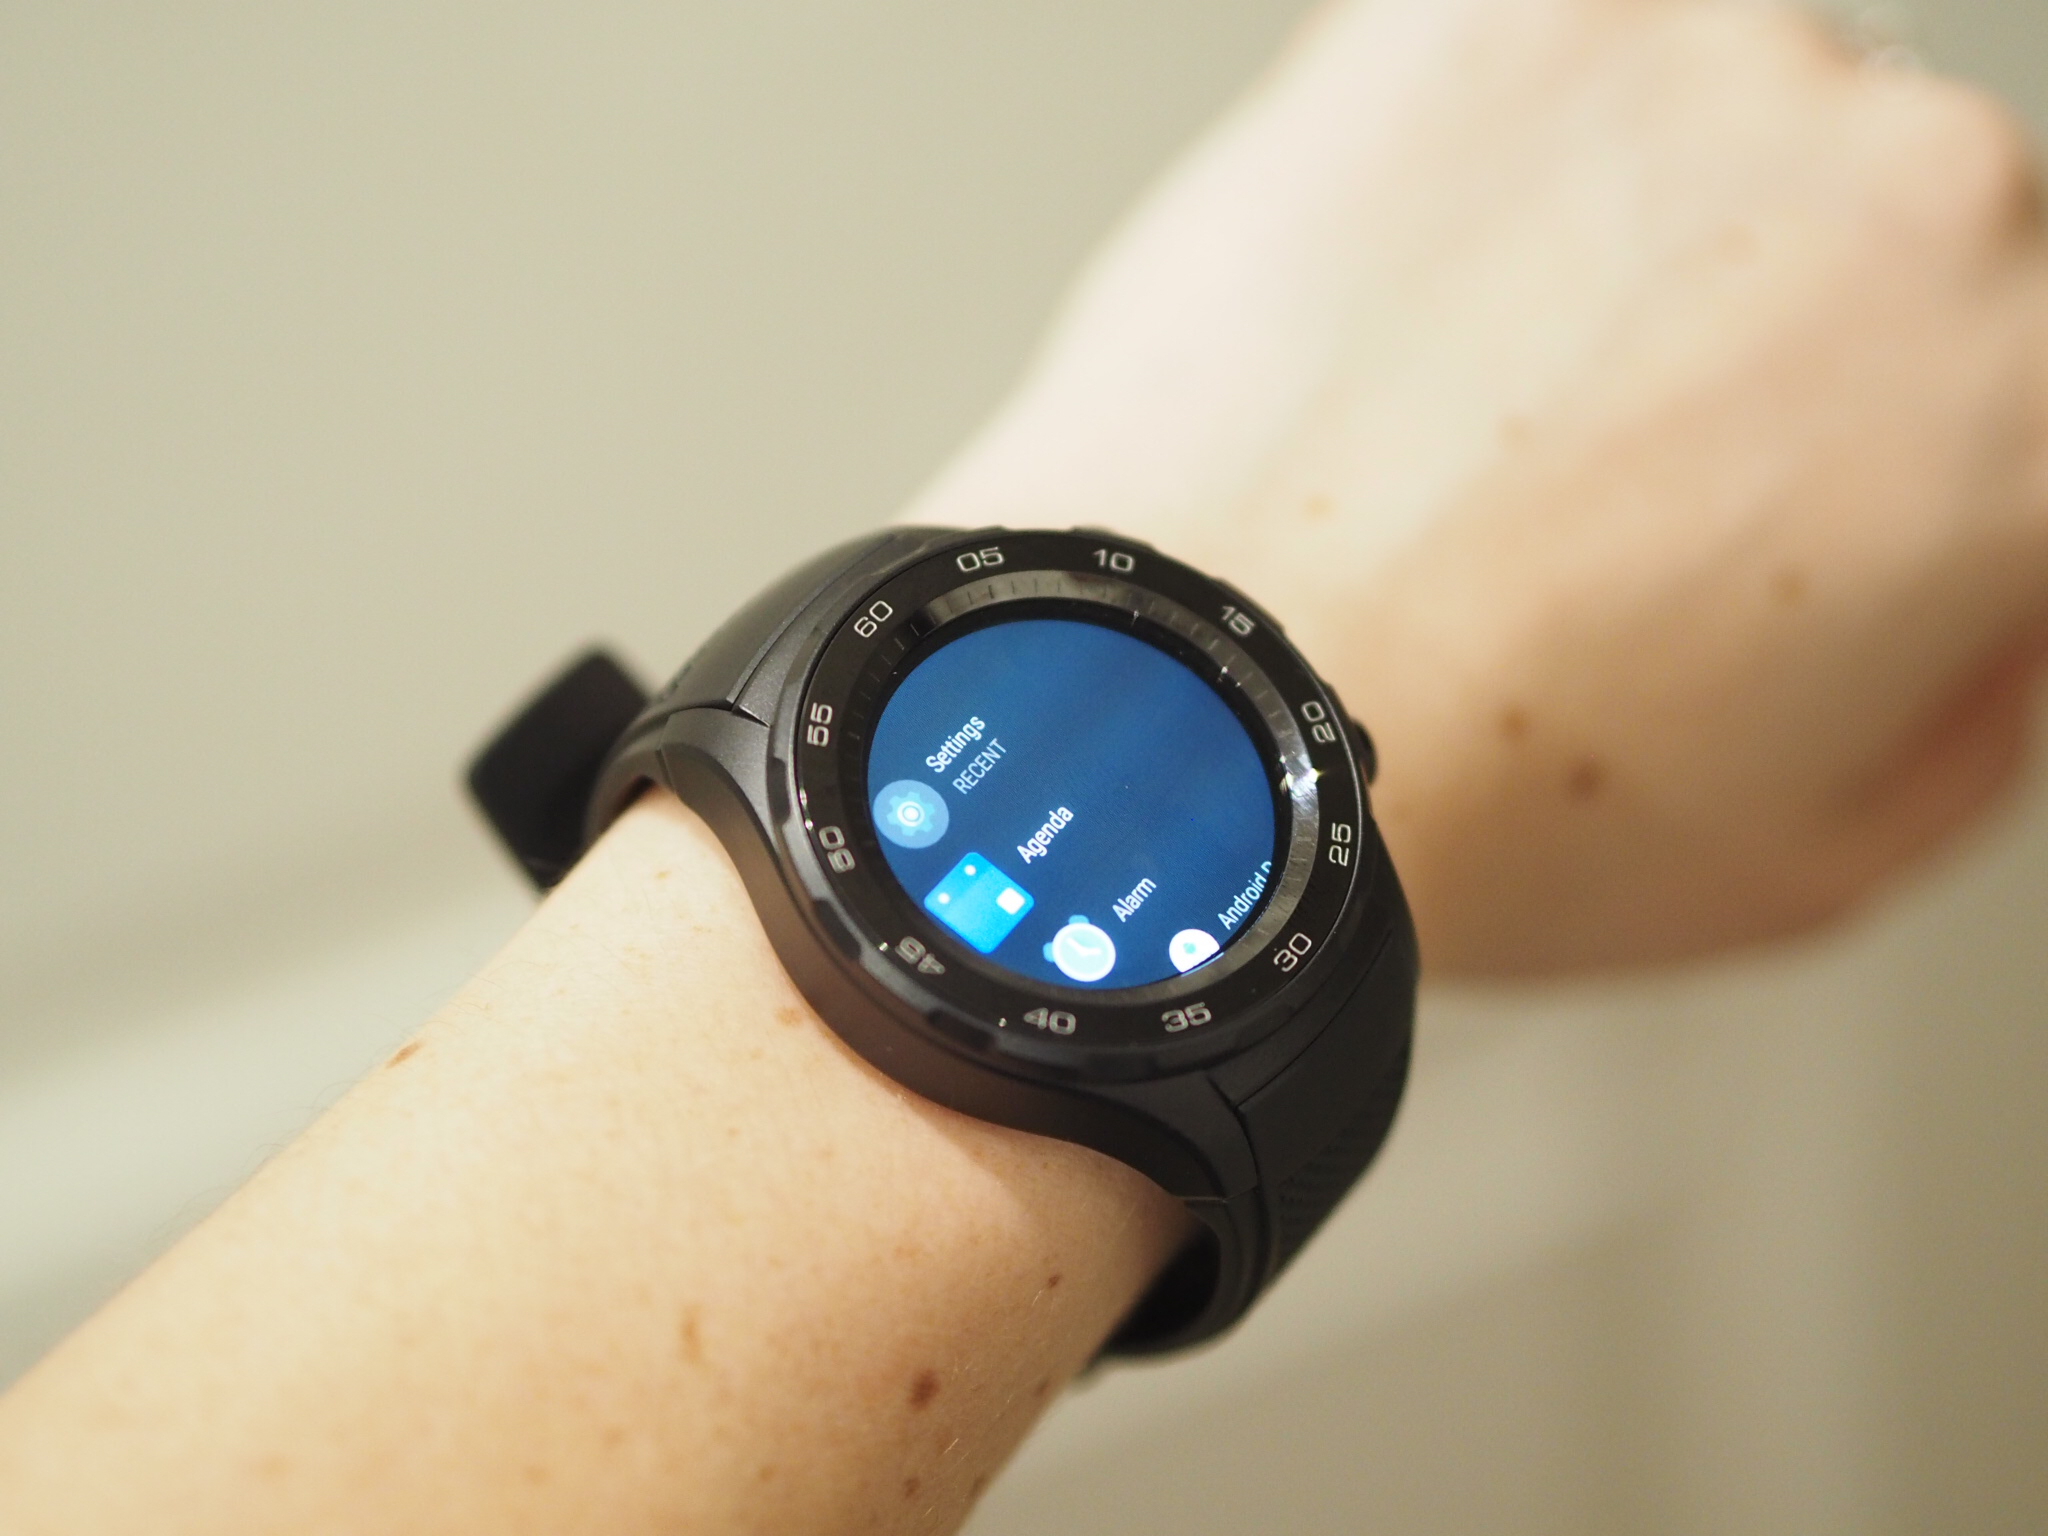 Introducing the Huawei Watch 2